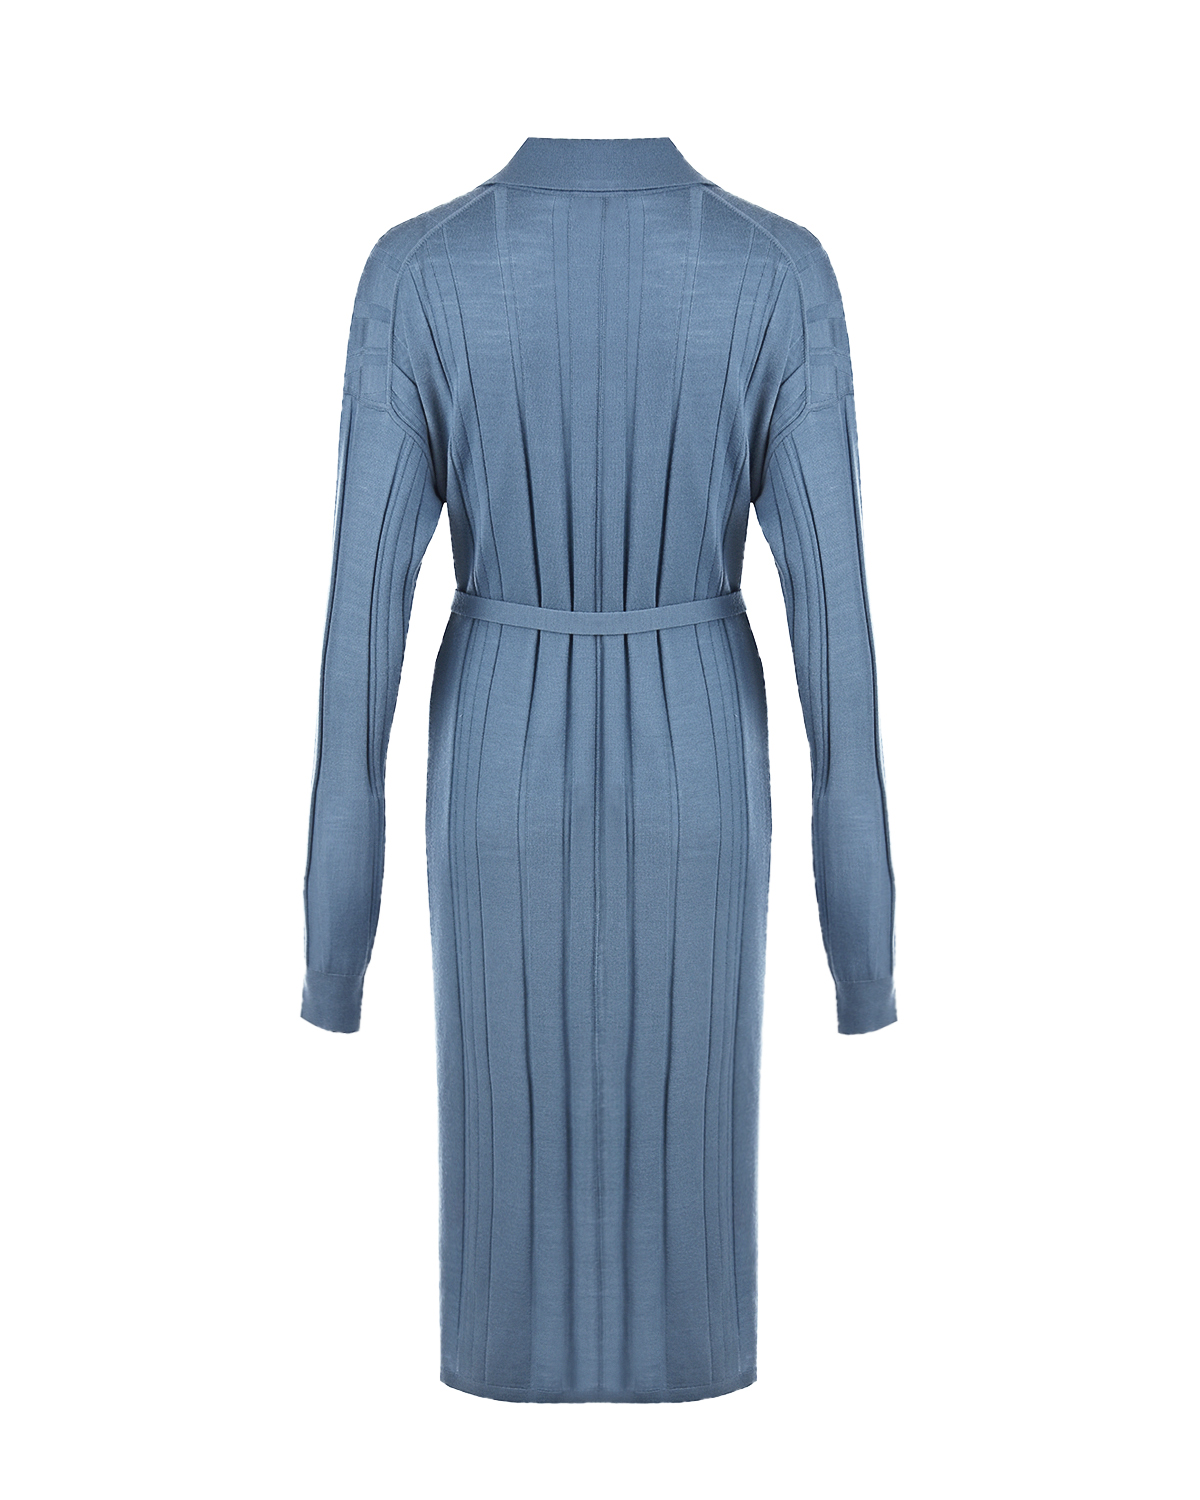 Голубое платье из шерстяного трикотажа Joseph, размер 40, цвет голубой - фото 6